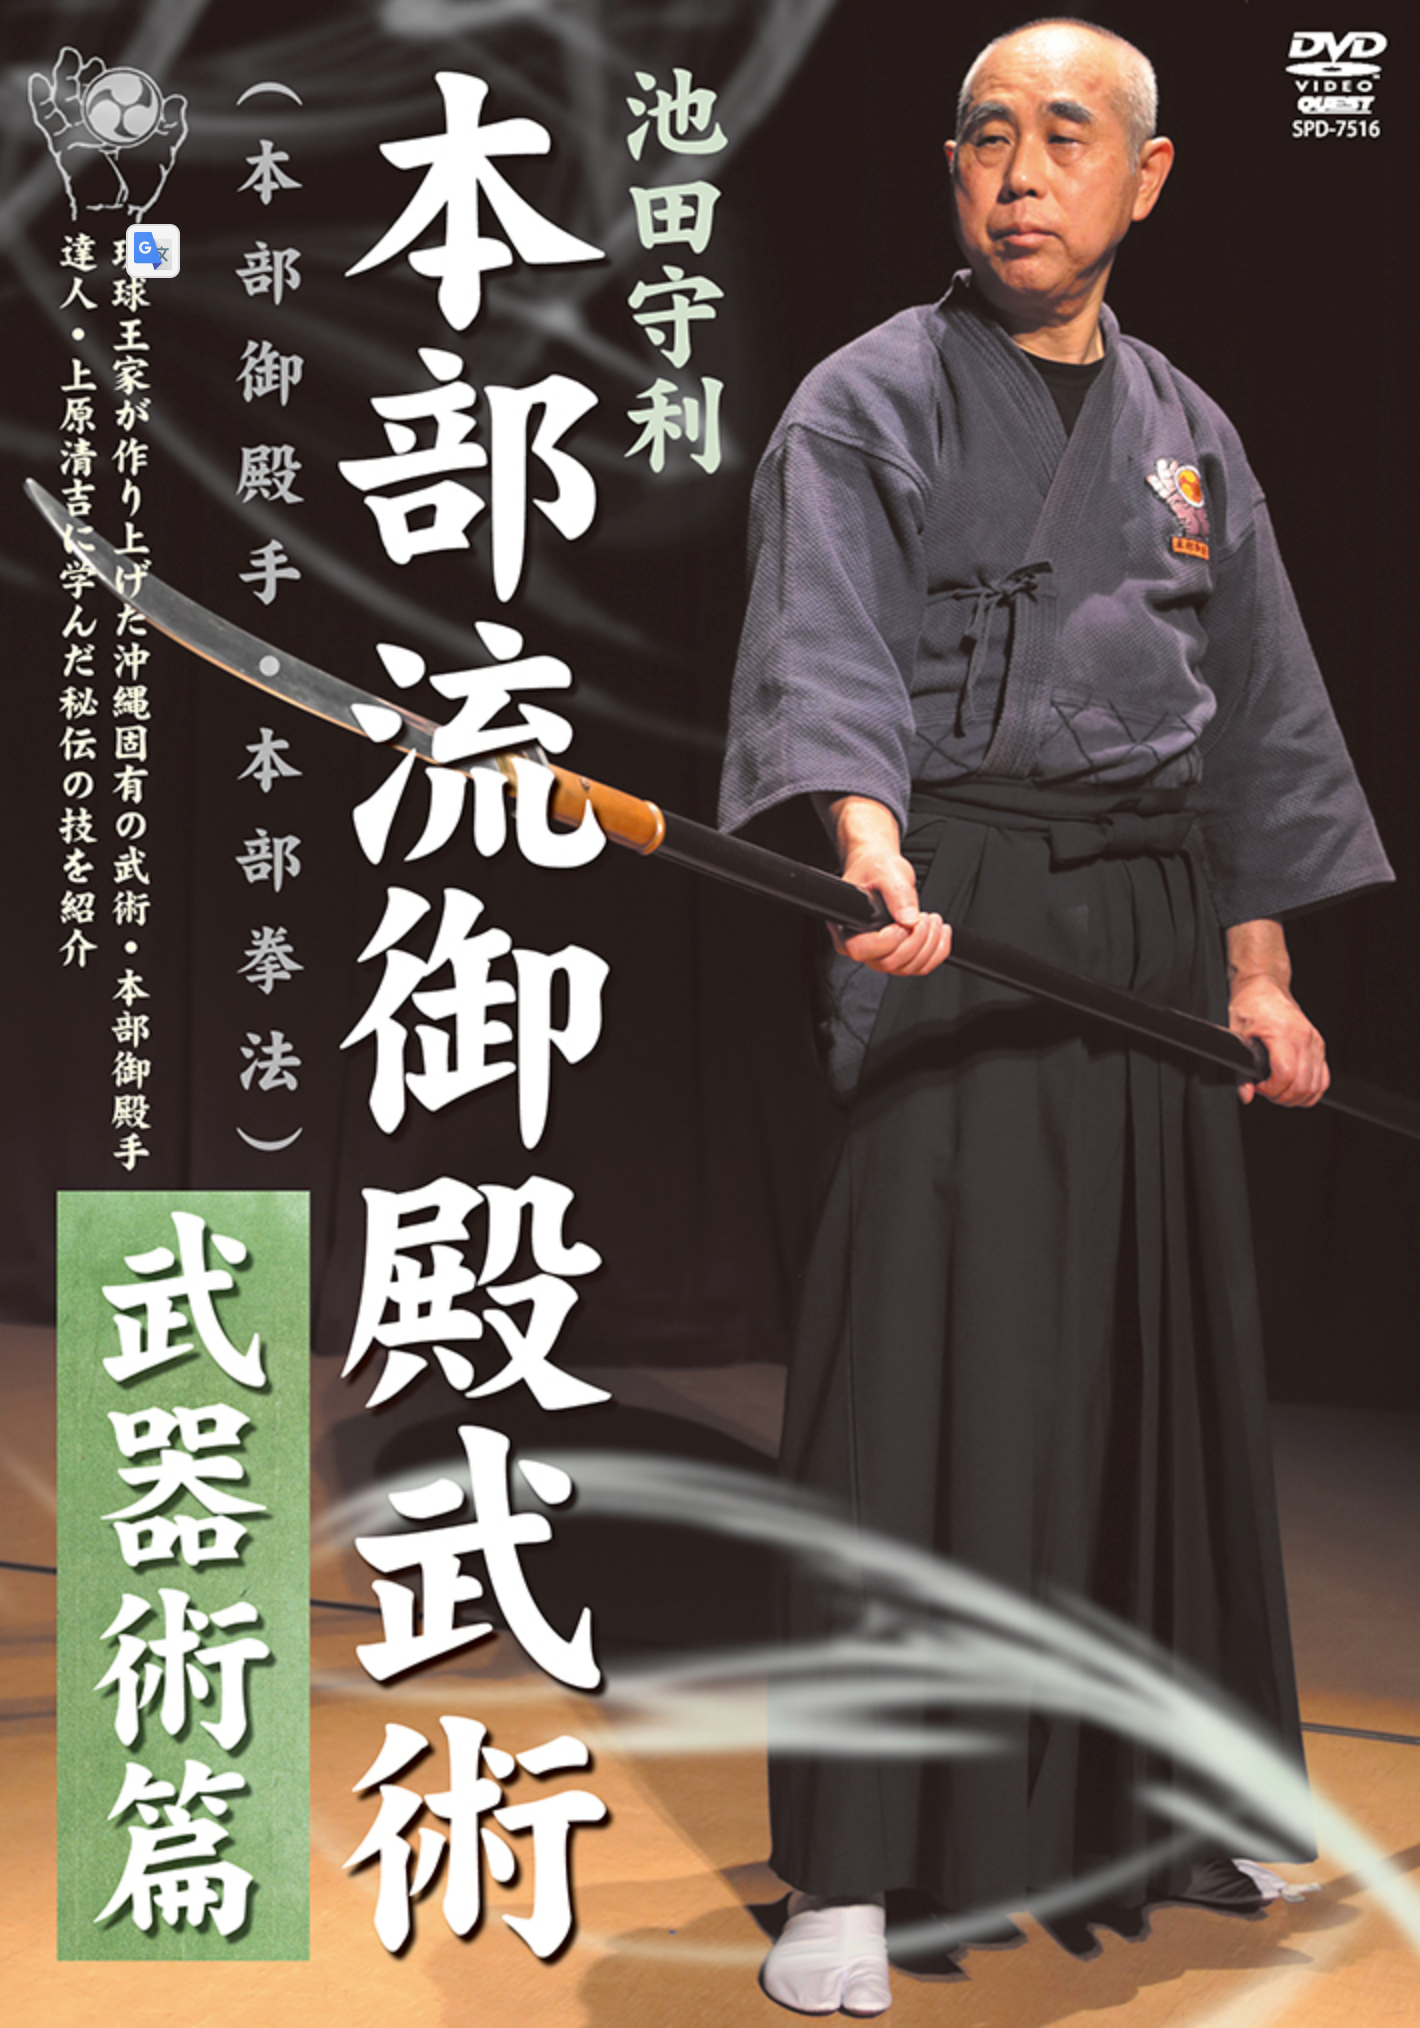 Motobu Ryu Gotente Bujutsu DVD 2: Weapons by Moritoshi Ikeda - Budovideos